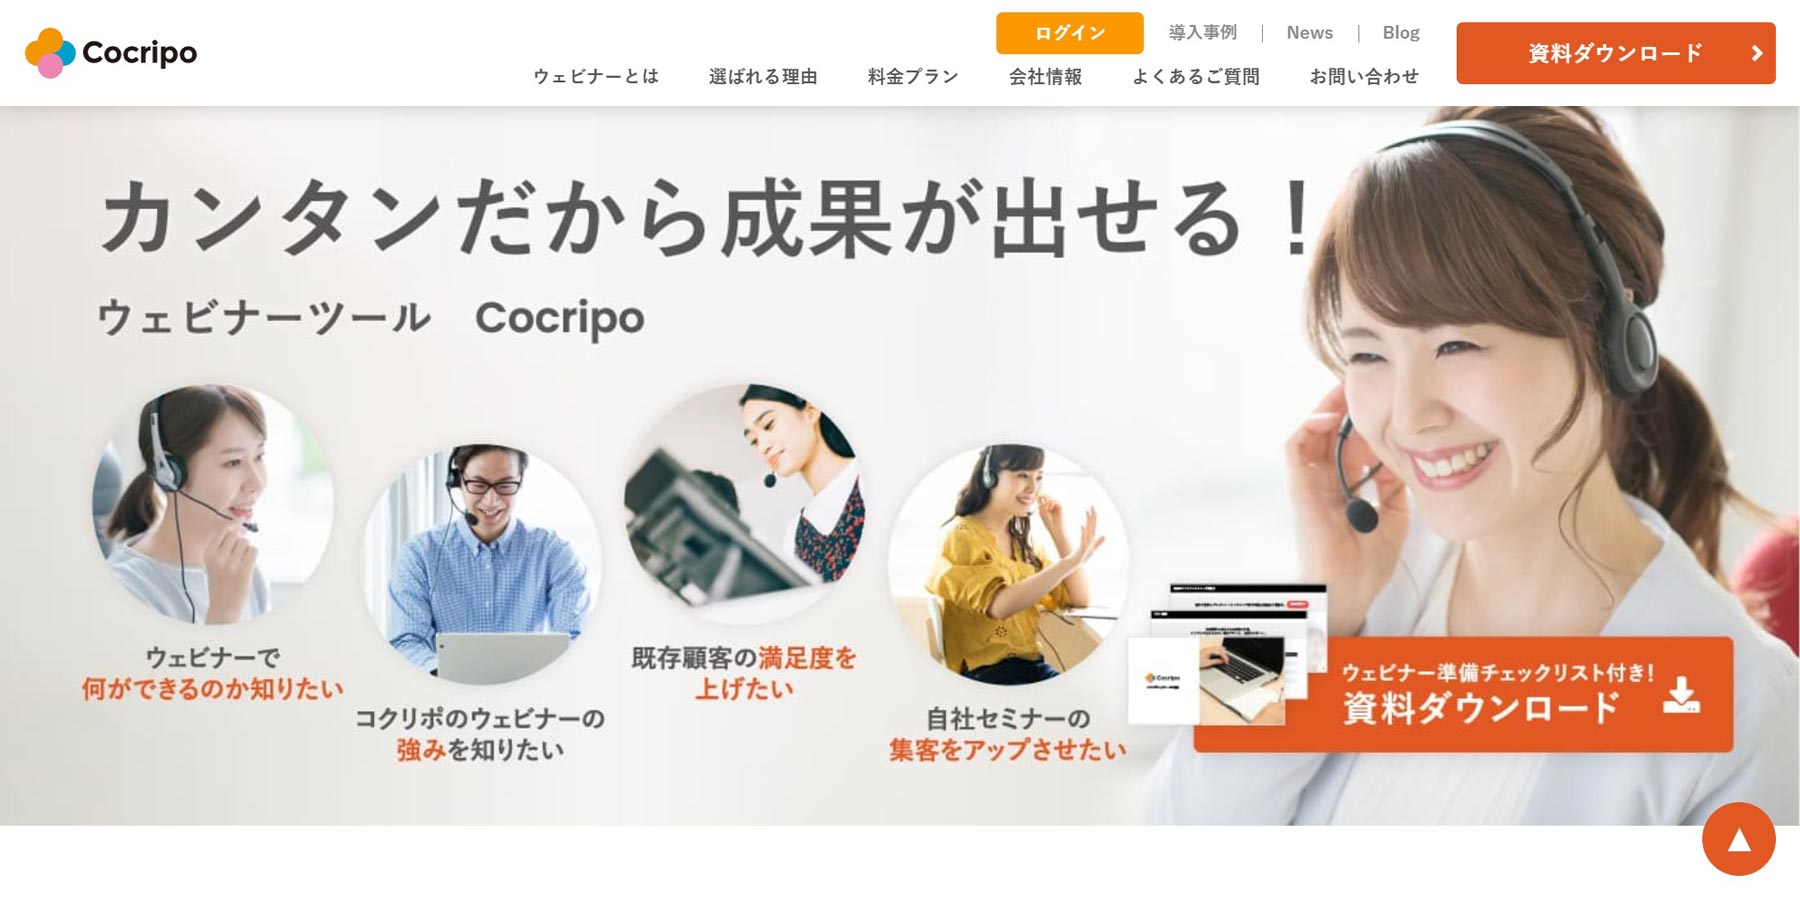 Cocripo公式Webサイト